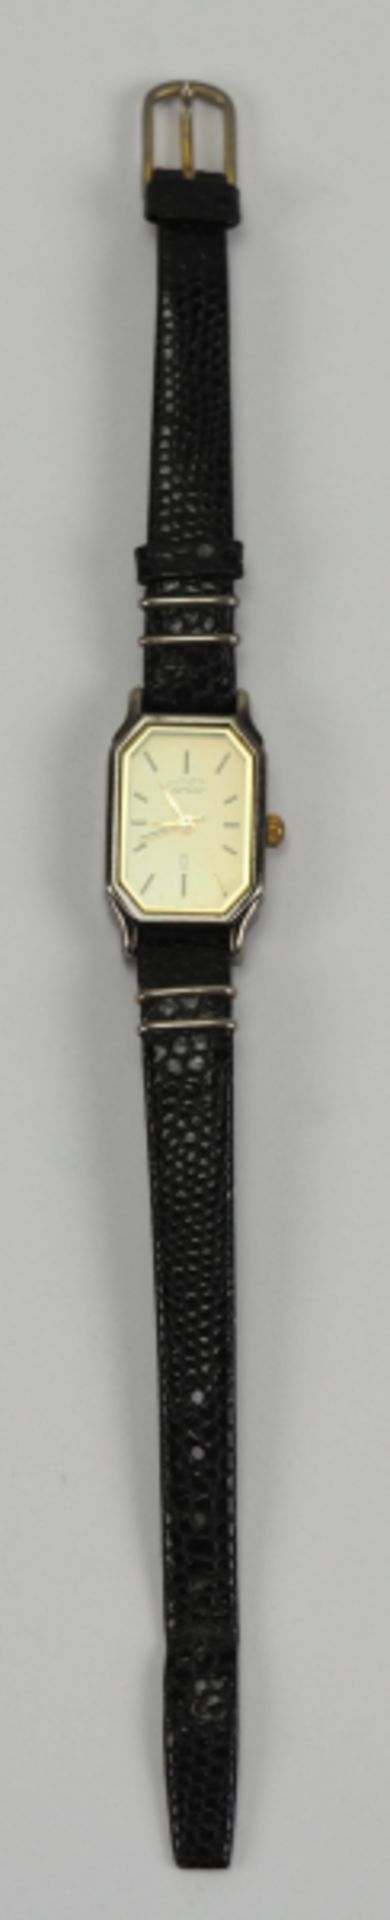 7.5.) UhrenCartier: Damen Armbanduhr.Stahlgehäuse, vergoldetes Zifferblatt must de Cariter, an - Image 7 of 7